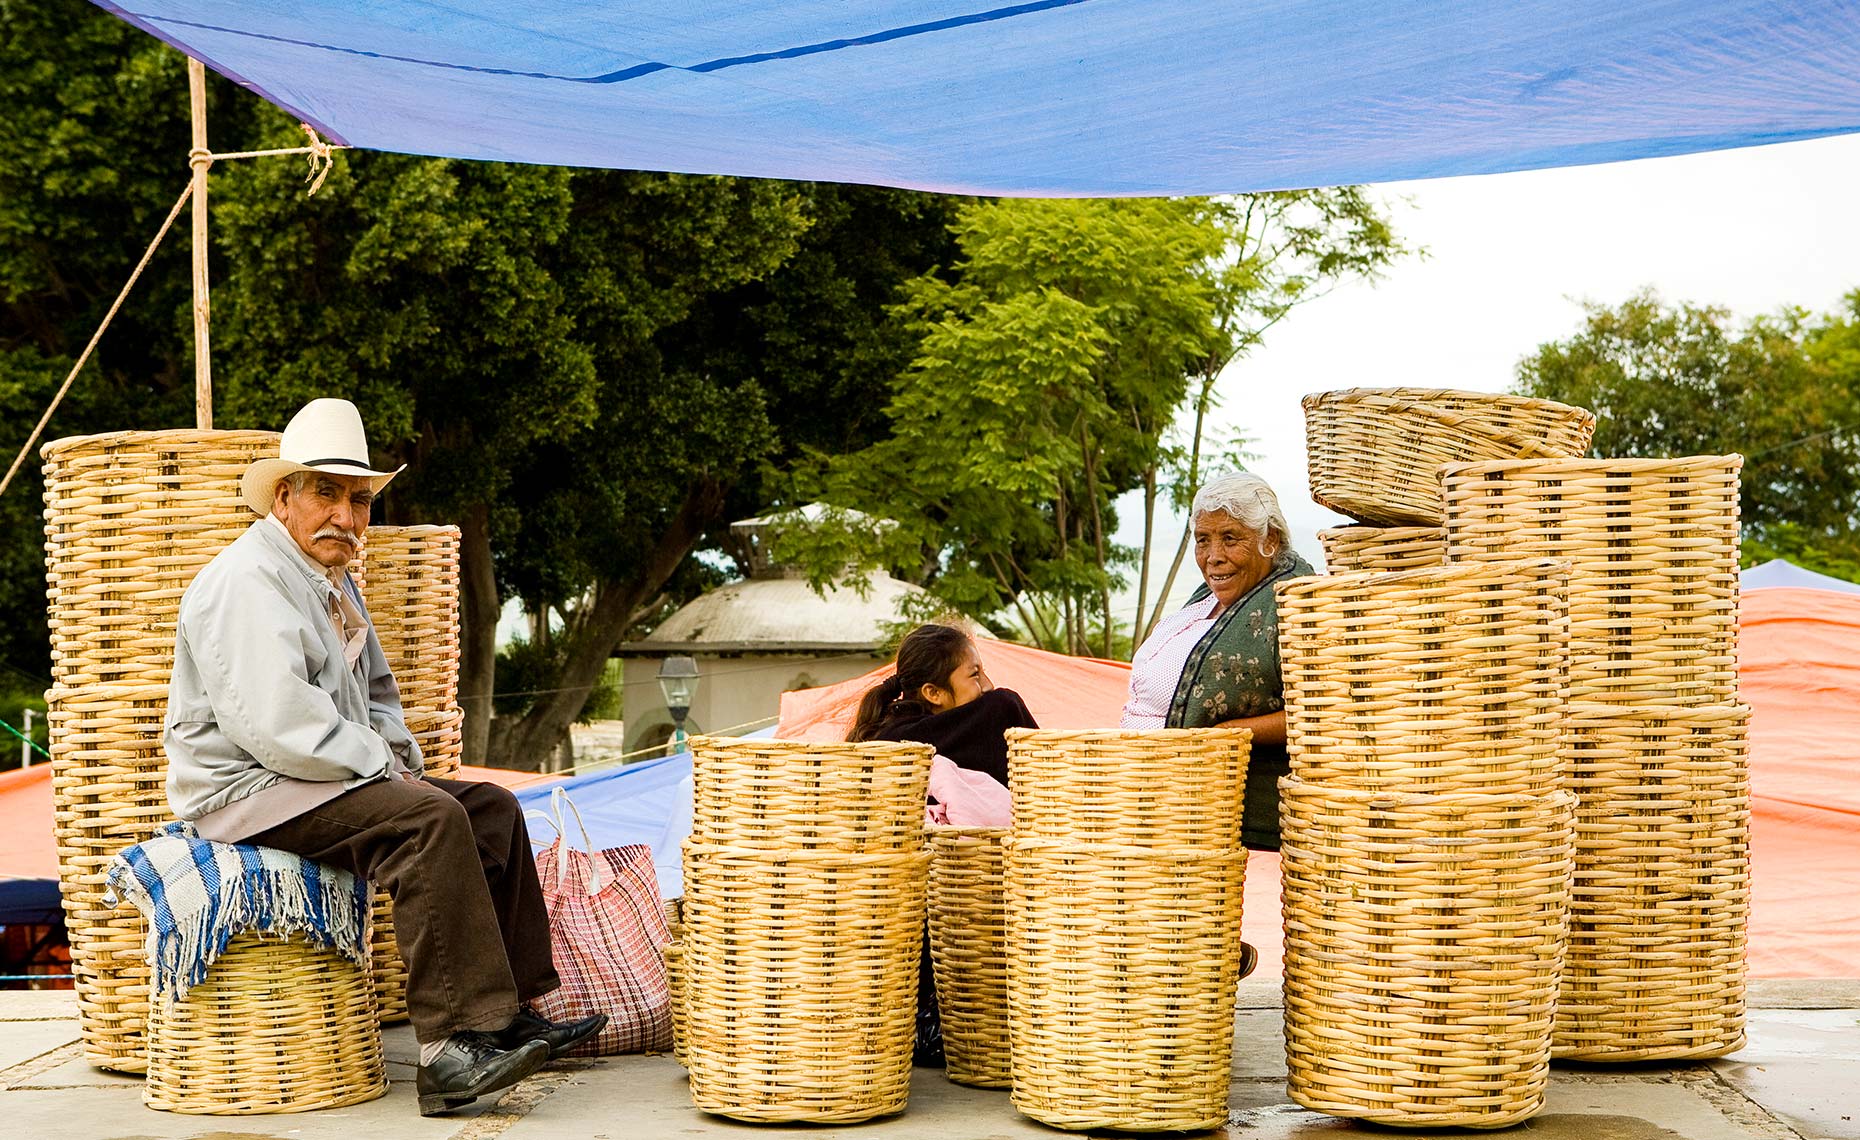 Basket vendor at Villa de Etla Market